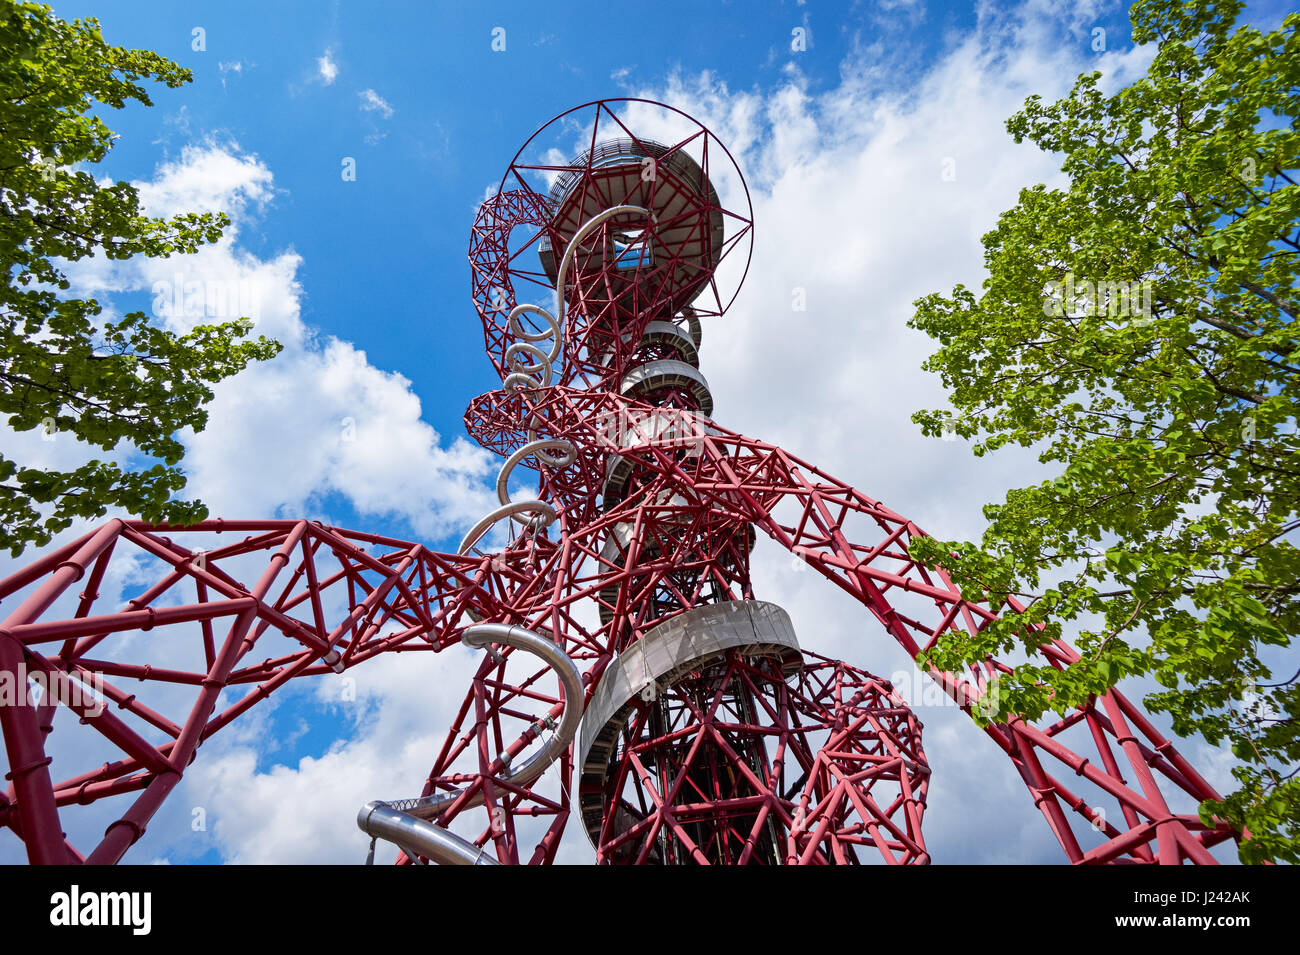 ArcelorMittal Orbit sculpture au Queen Elizabeth Olympic Park de Londres Angleterre Royaume-Uni UK Banque D'Images